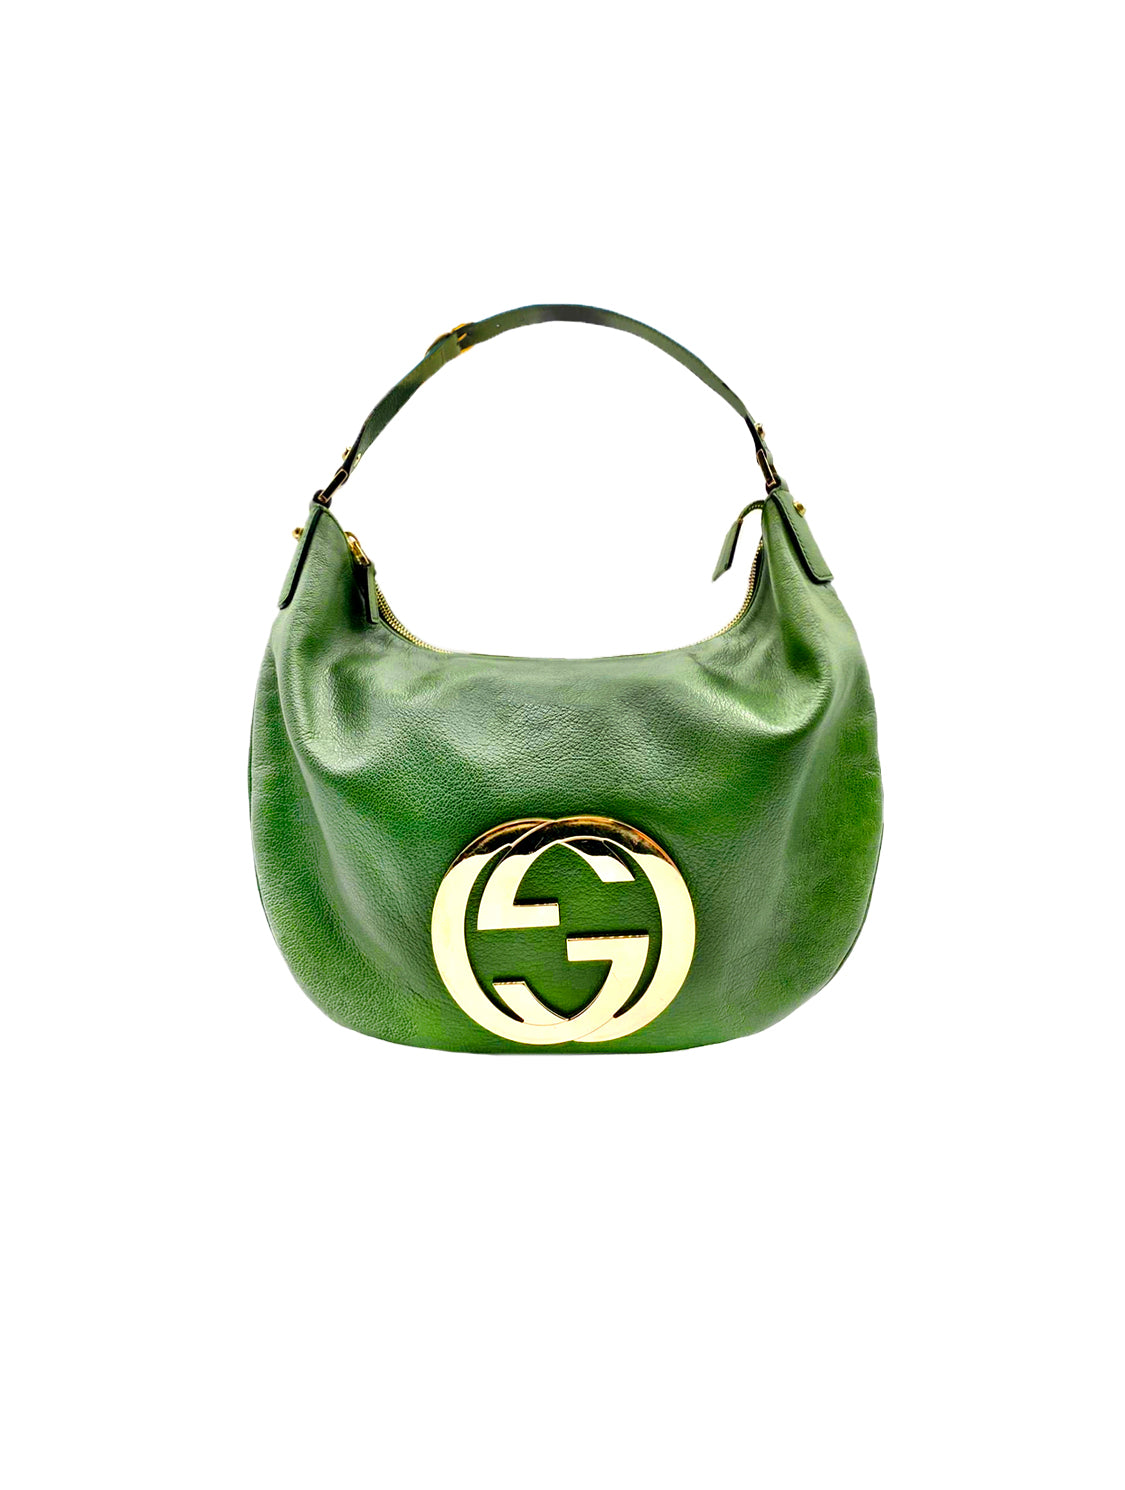 Gucci 2000s Rare Green OG Hobo Gold Logo Bag